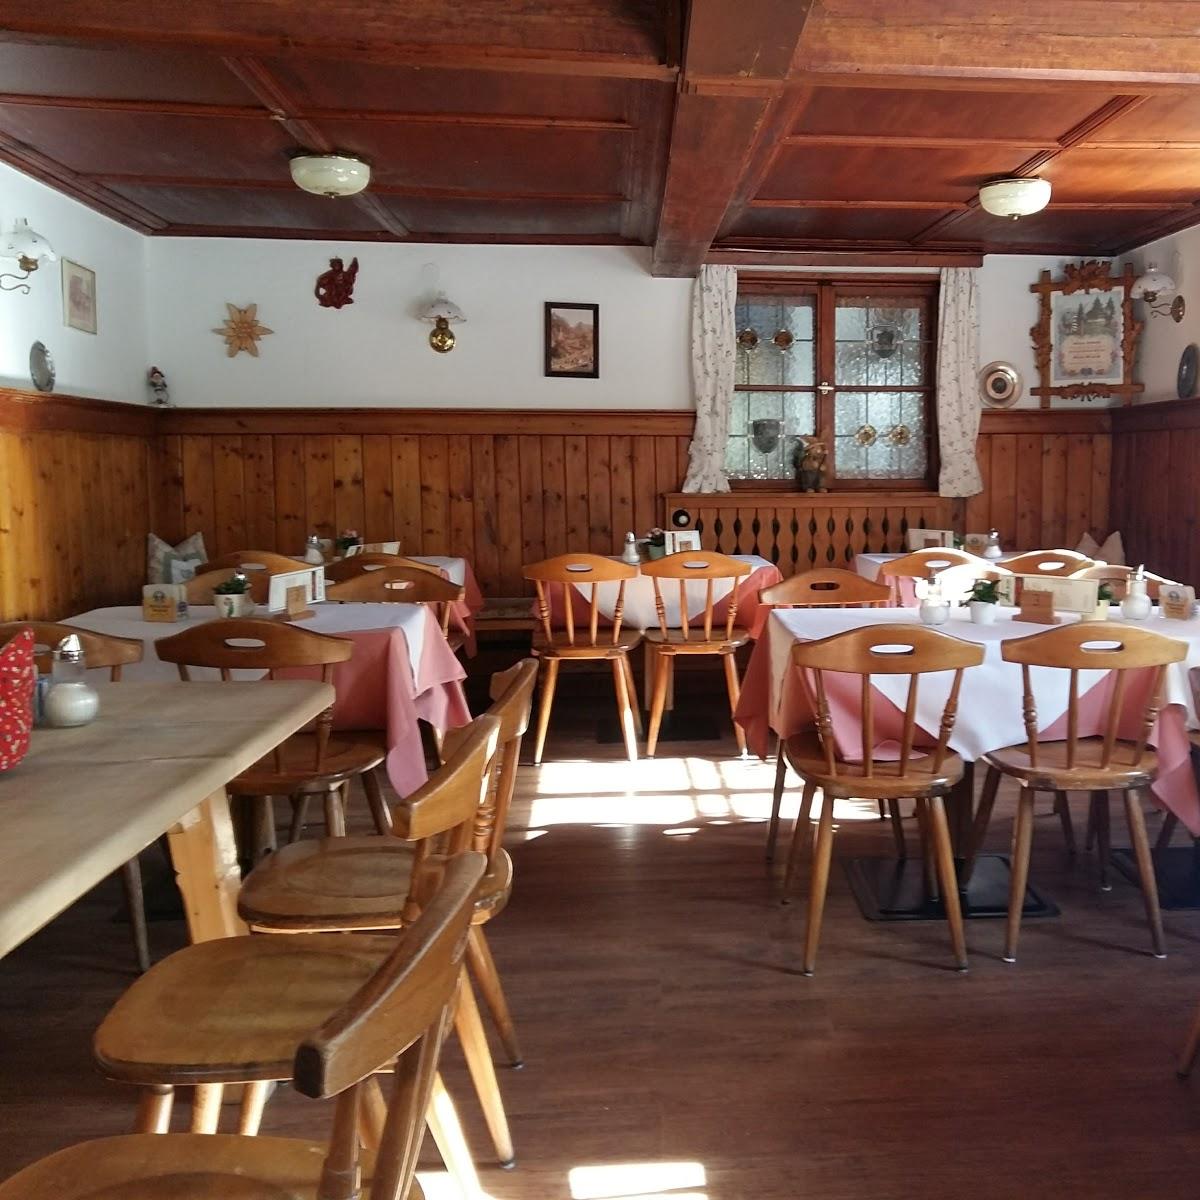 Restaurant "Cafe Seidl" in Fischbachau